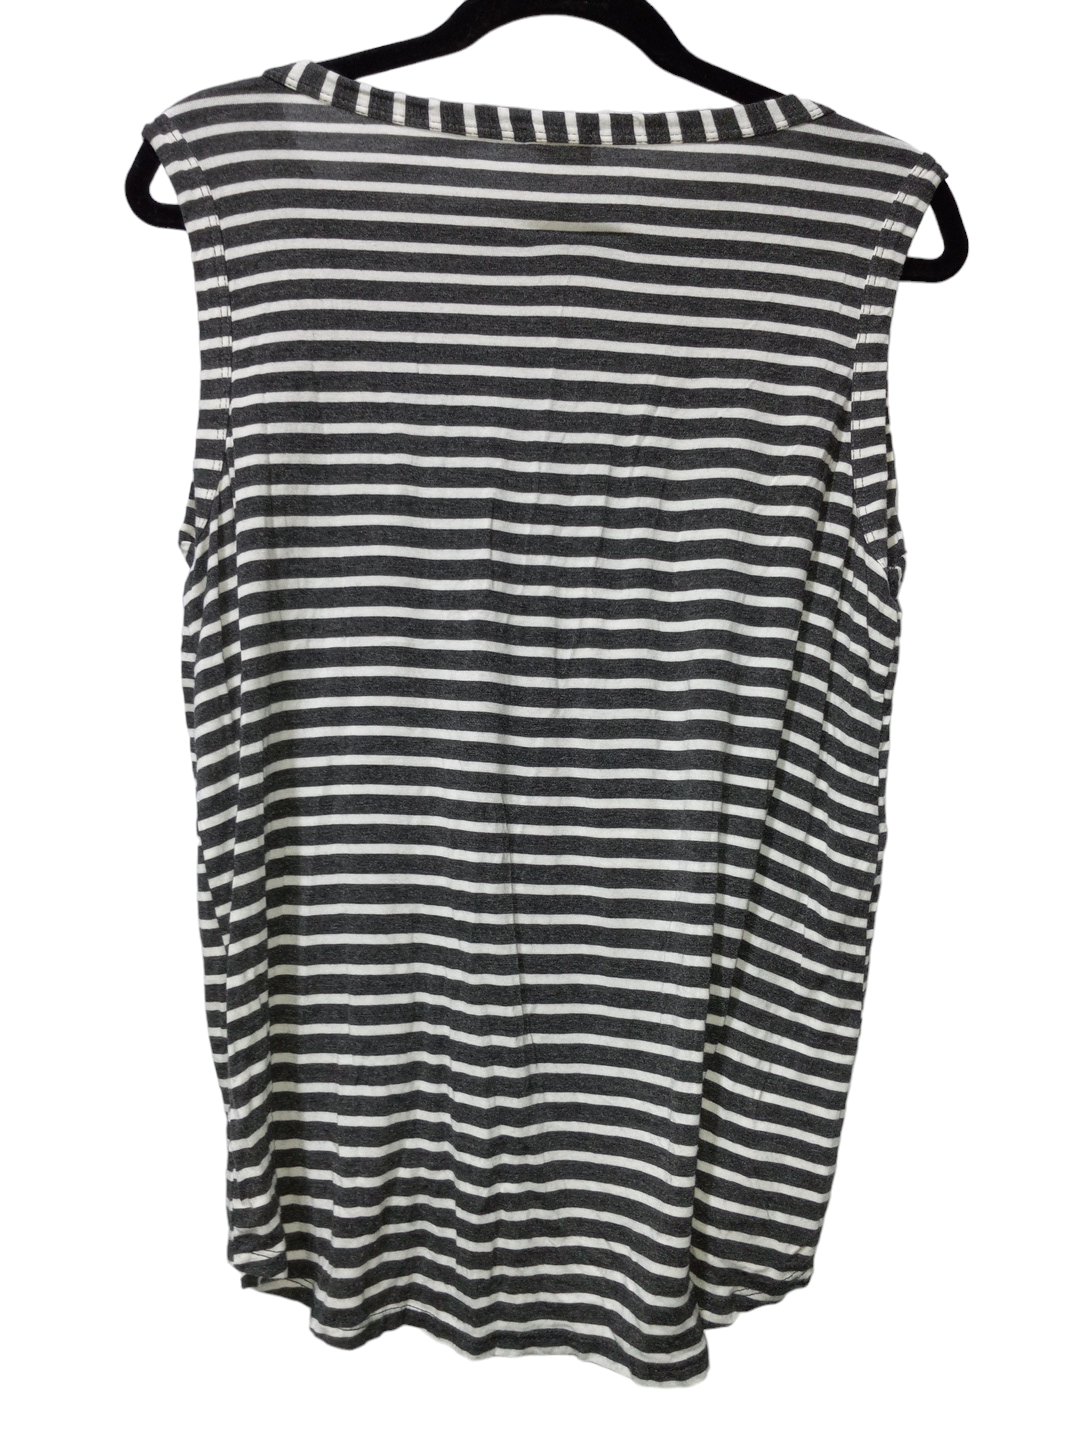 Striped Pattern Top Sleeveless Bibi, Size M